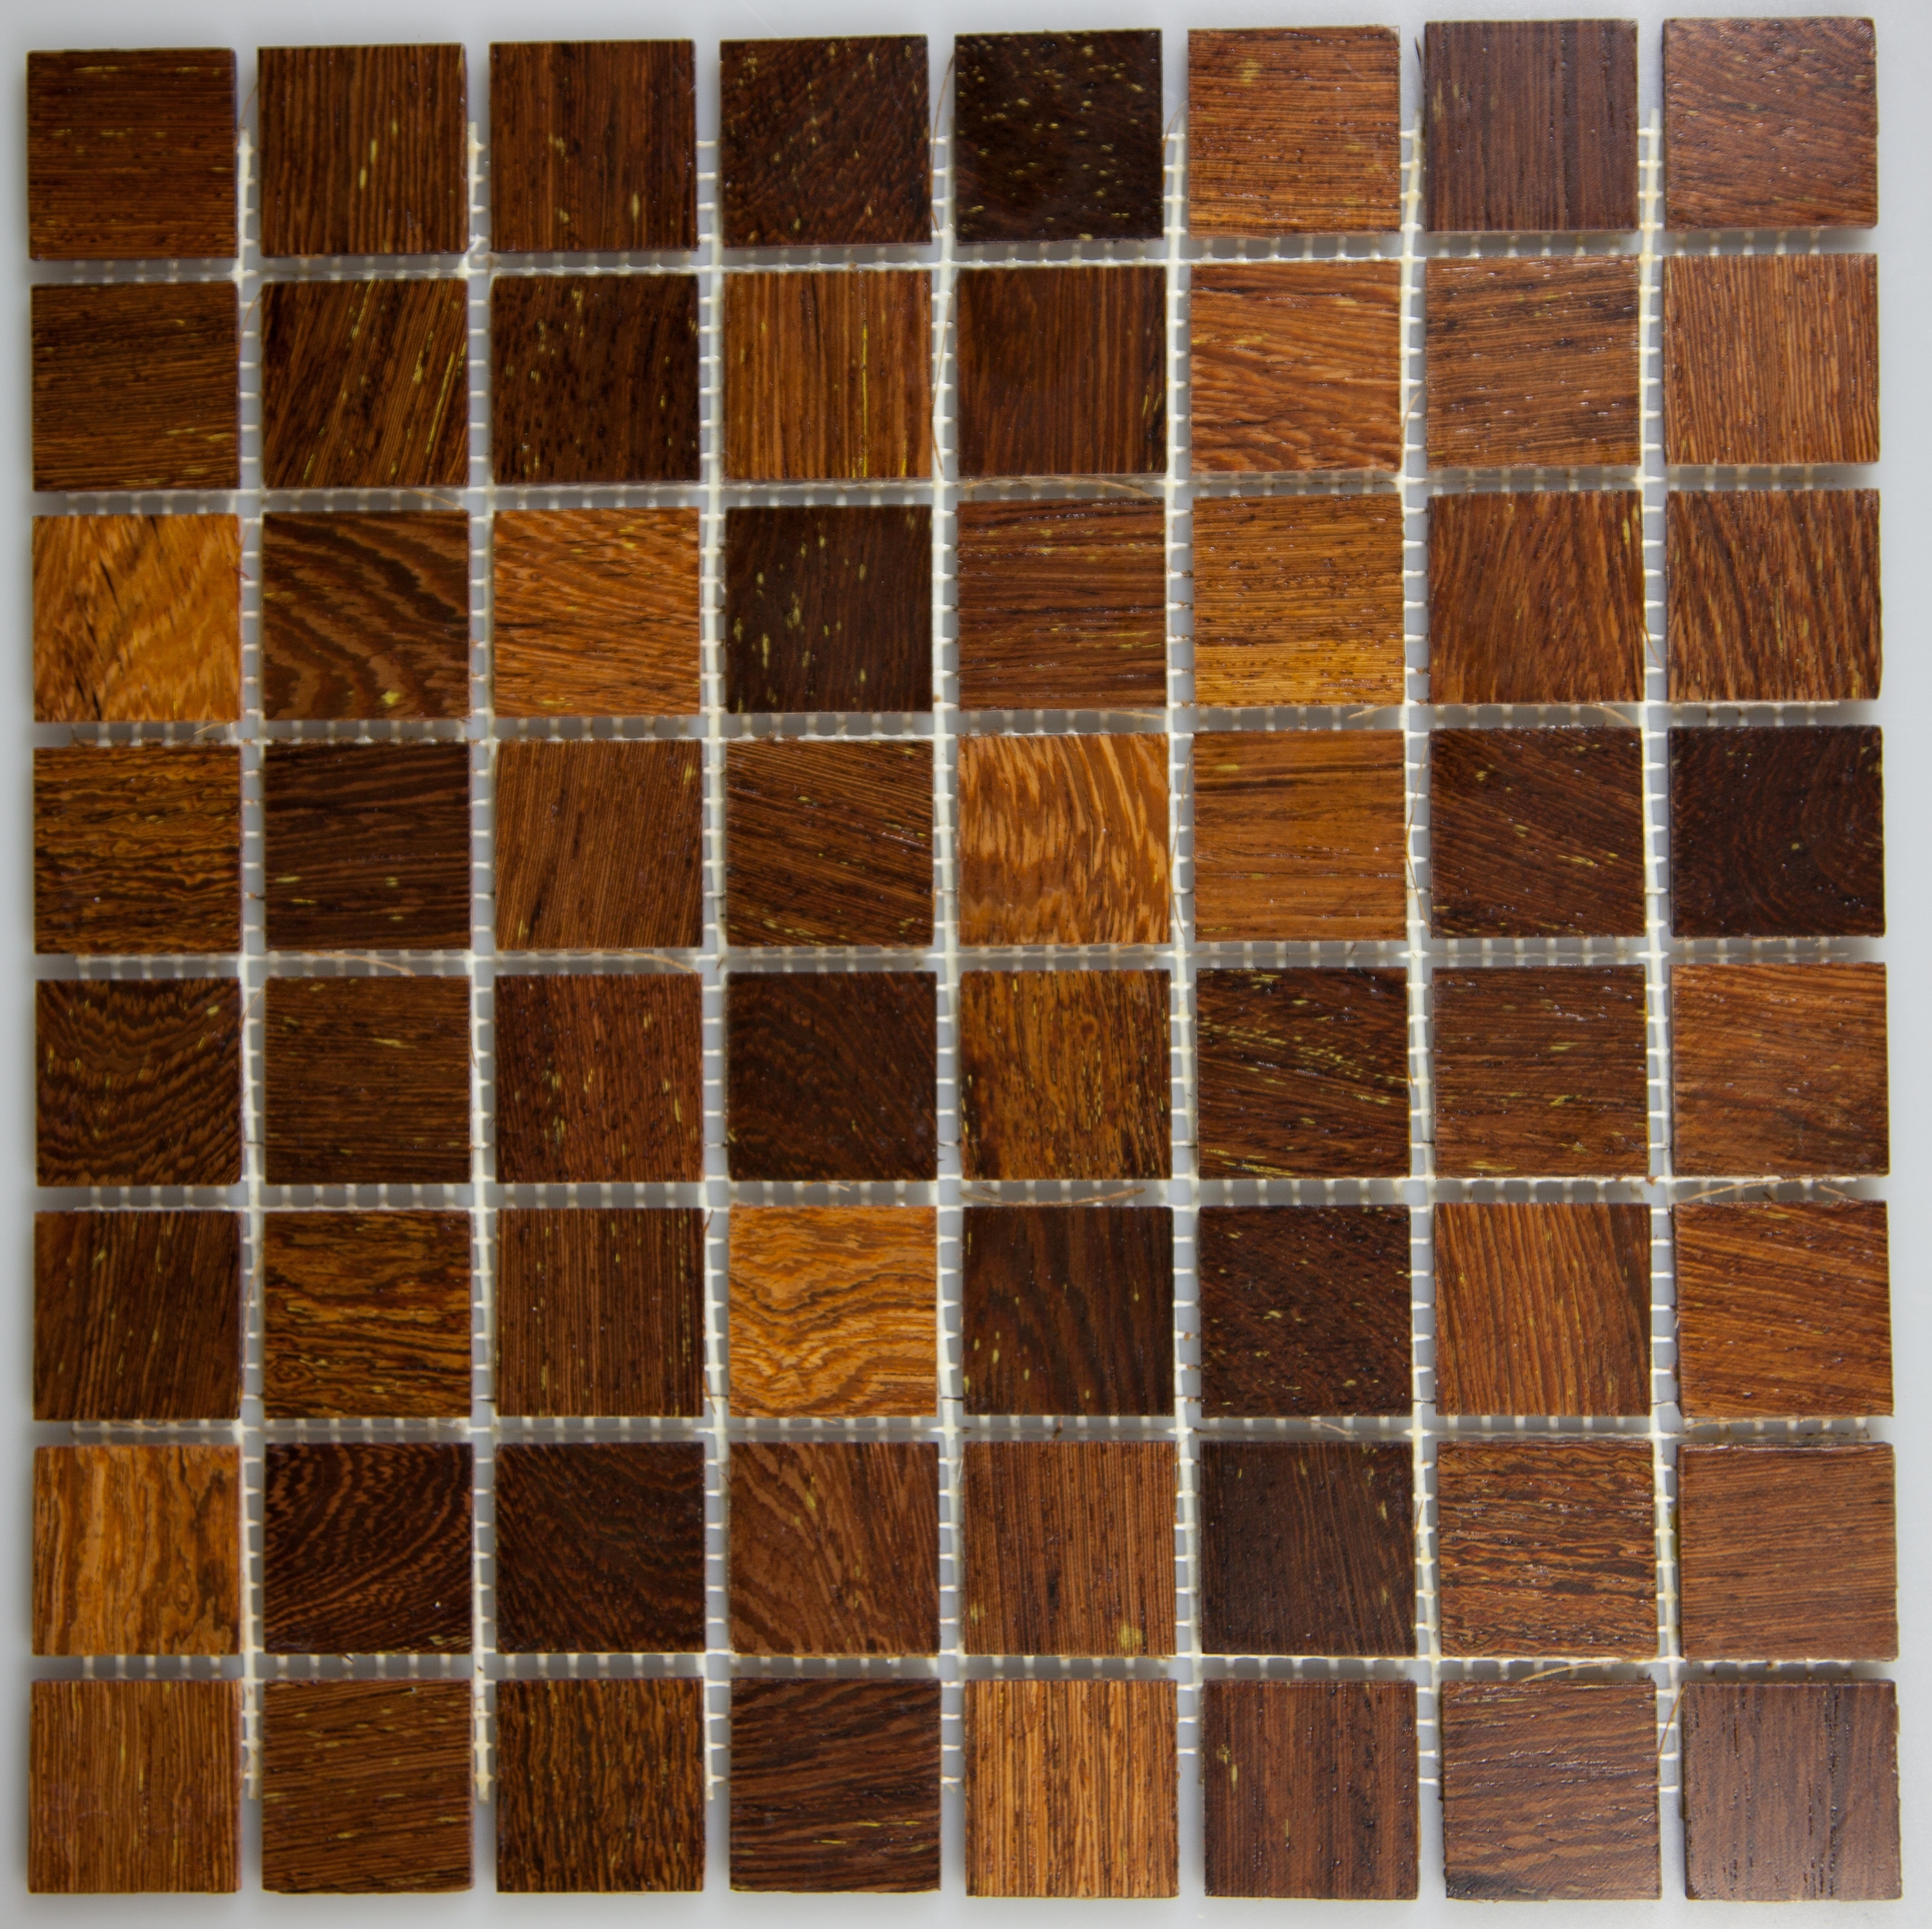 Panga Panga 33.5mm x 33.5mm Wood Tile